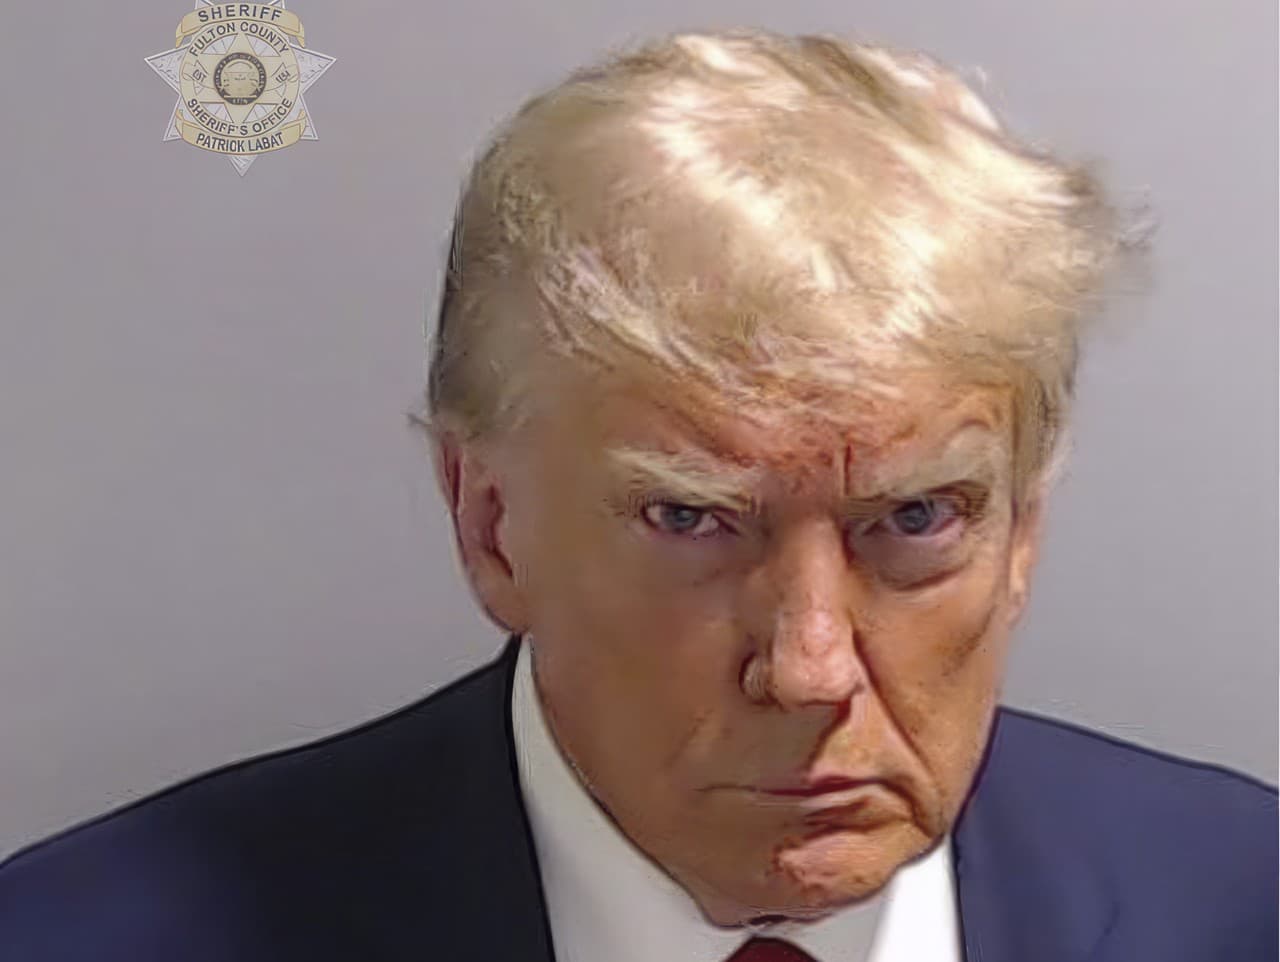 Bývalý prezident USA Donald Trump na väzenskej snímke vo Fulton County